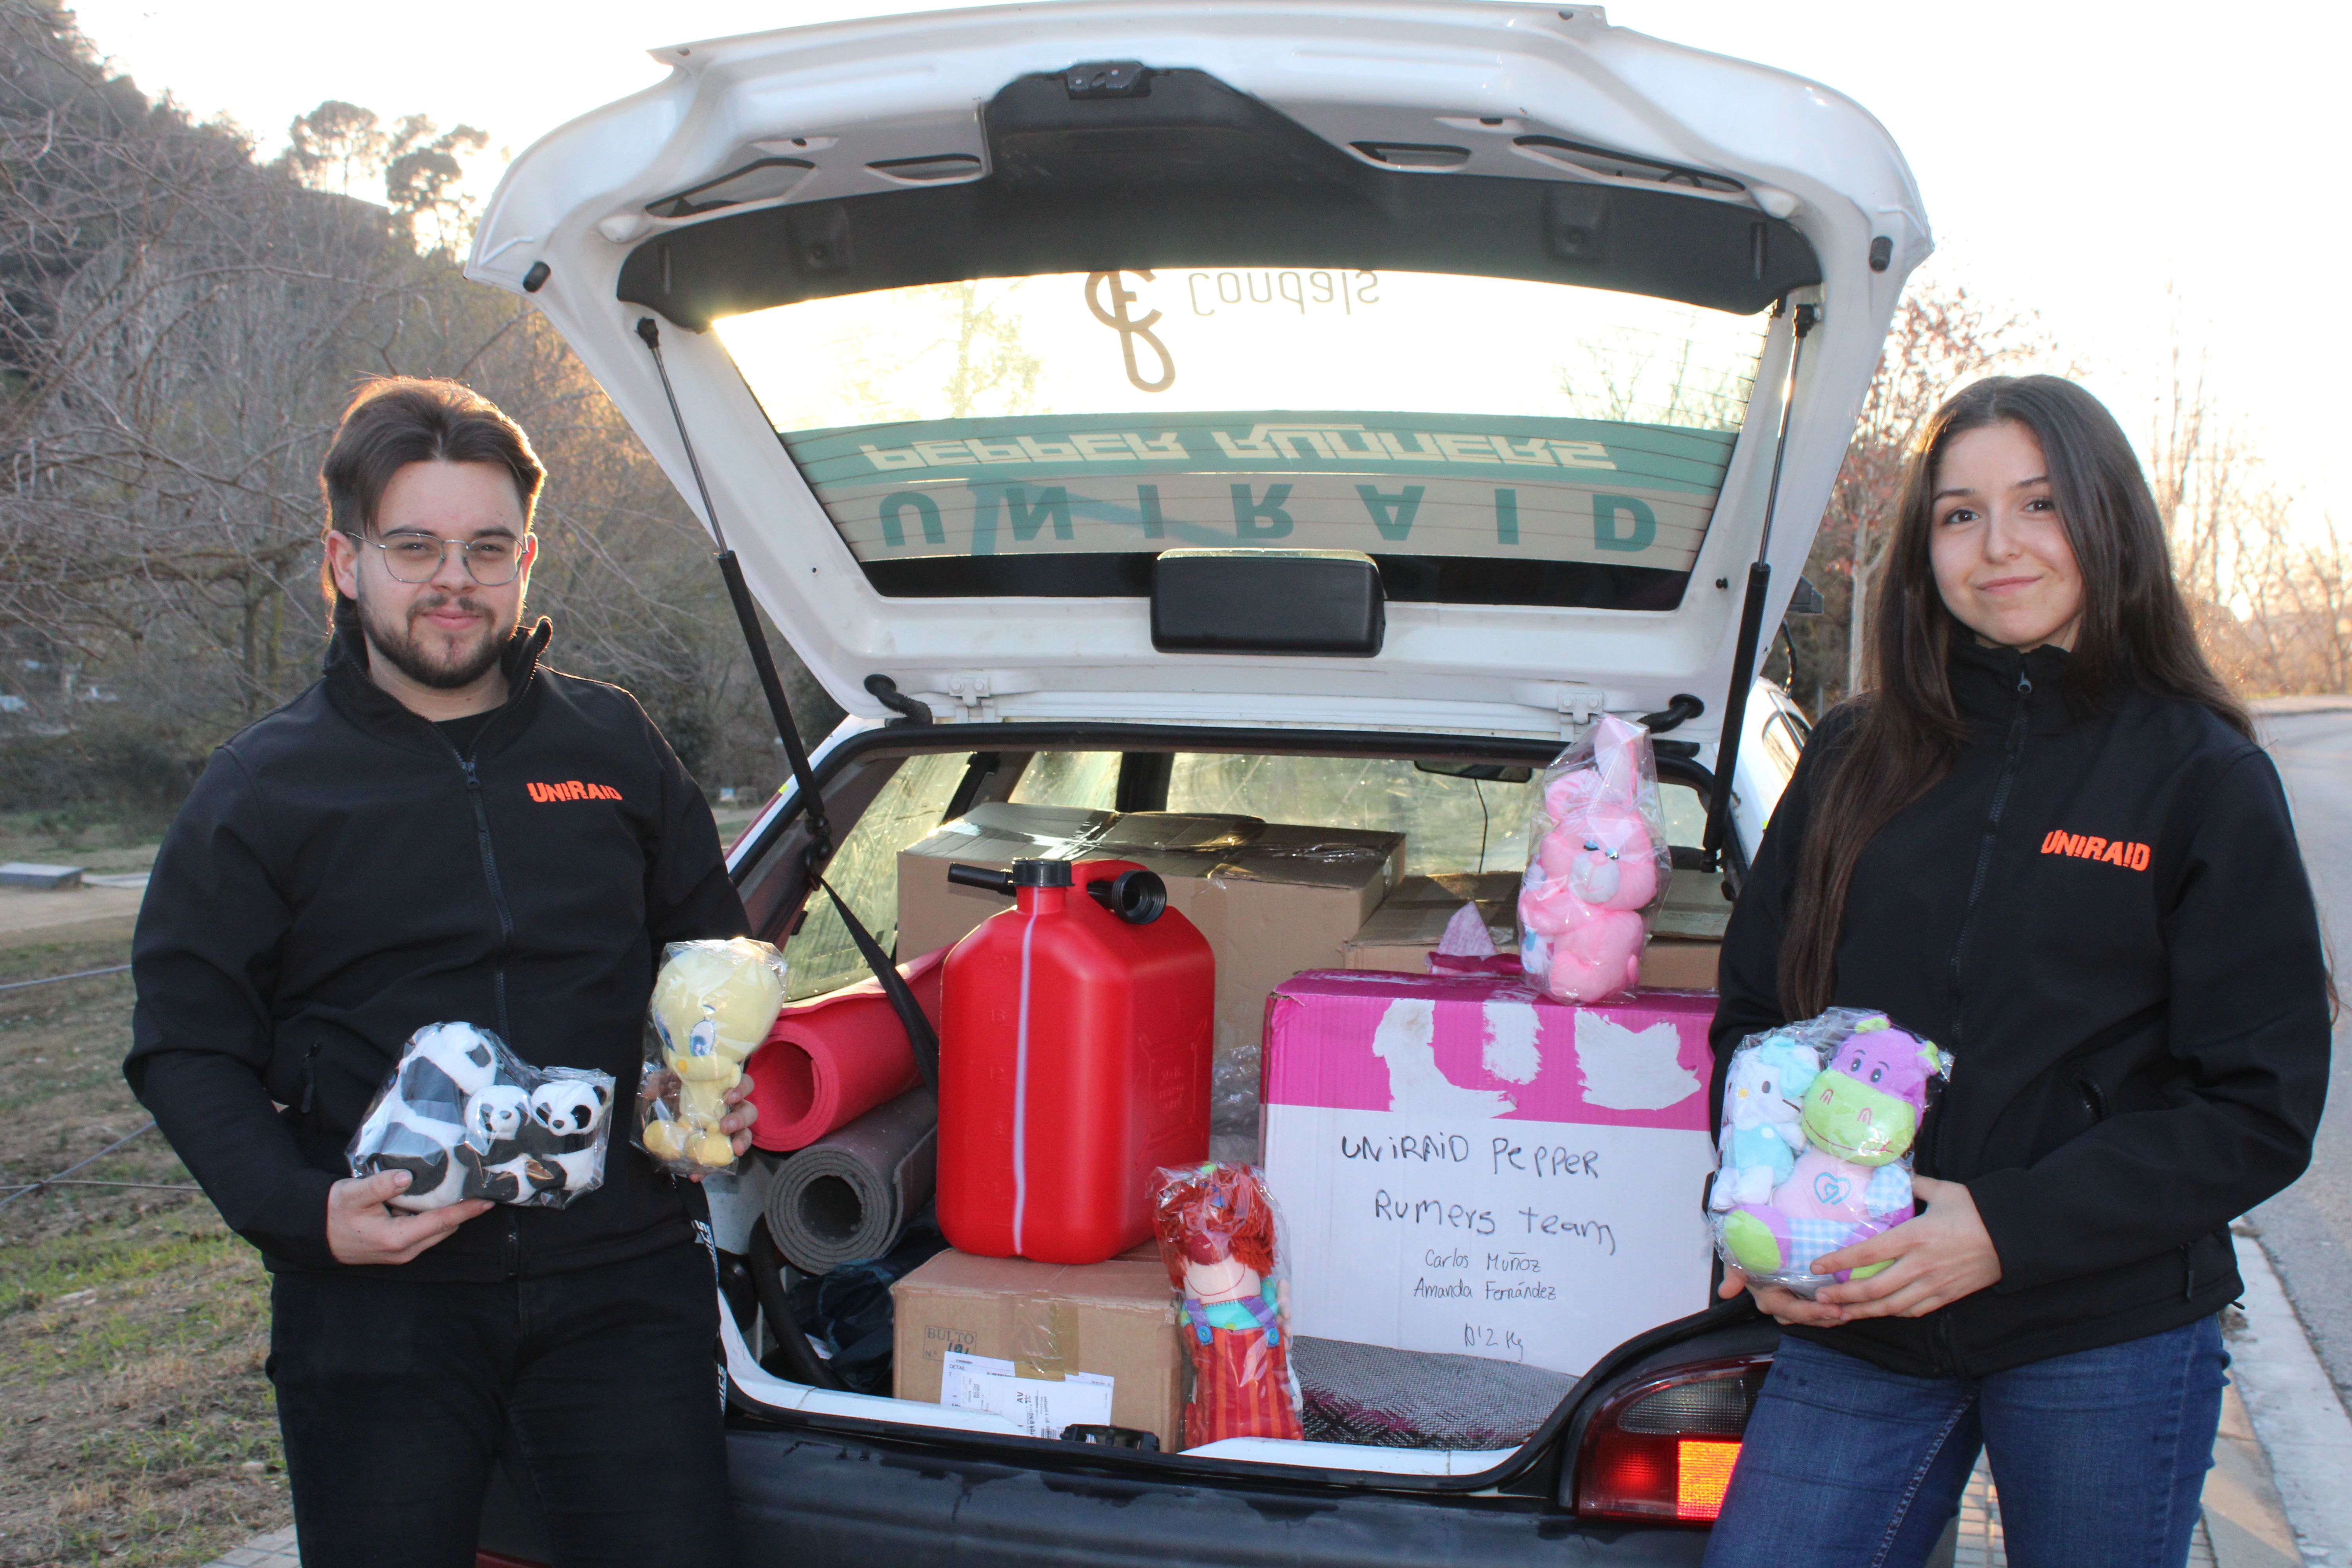 L'Amanda i el Carlos porten 40 kg de joguines a la part del darrere del cotxe. FOTO: Guillem Barrera